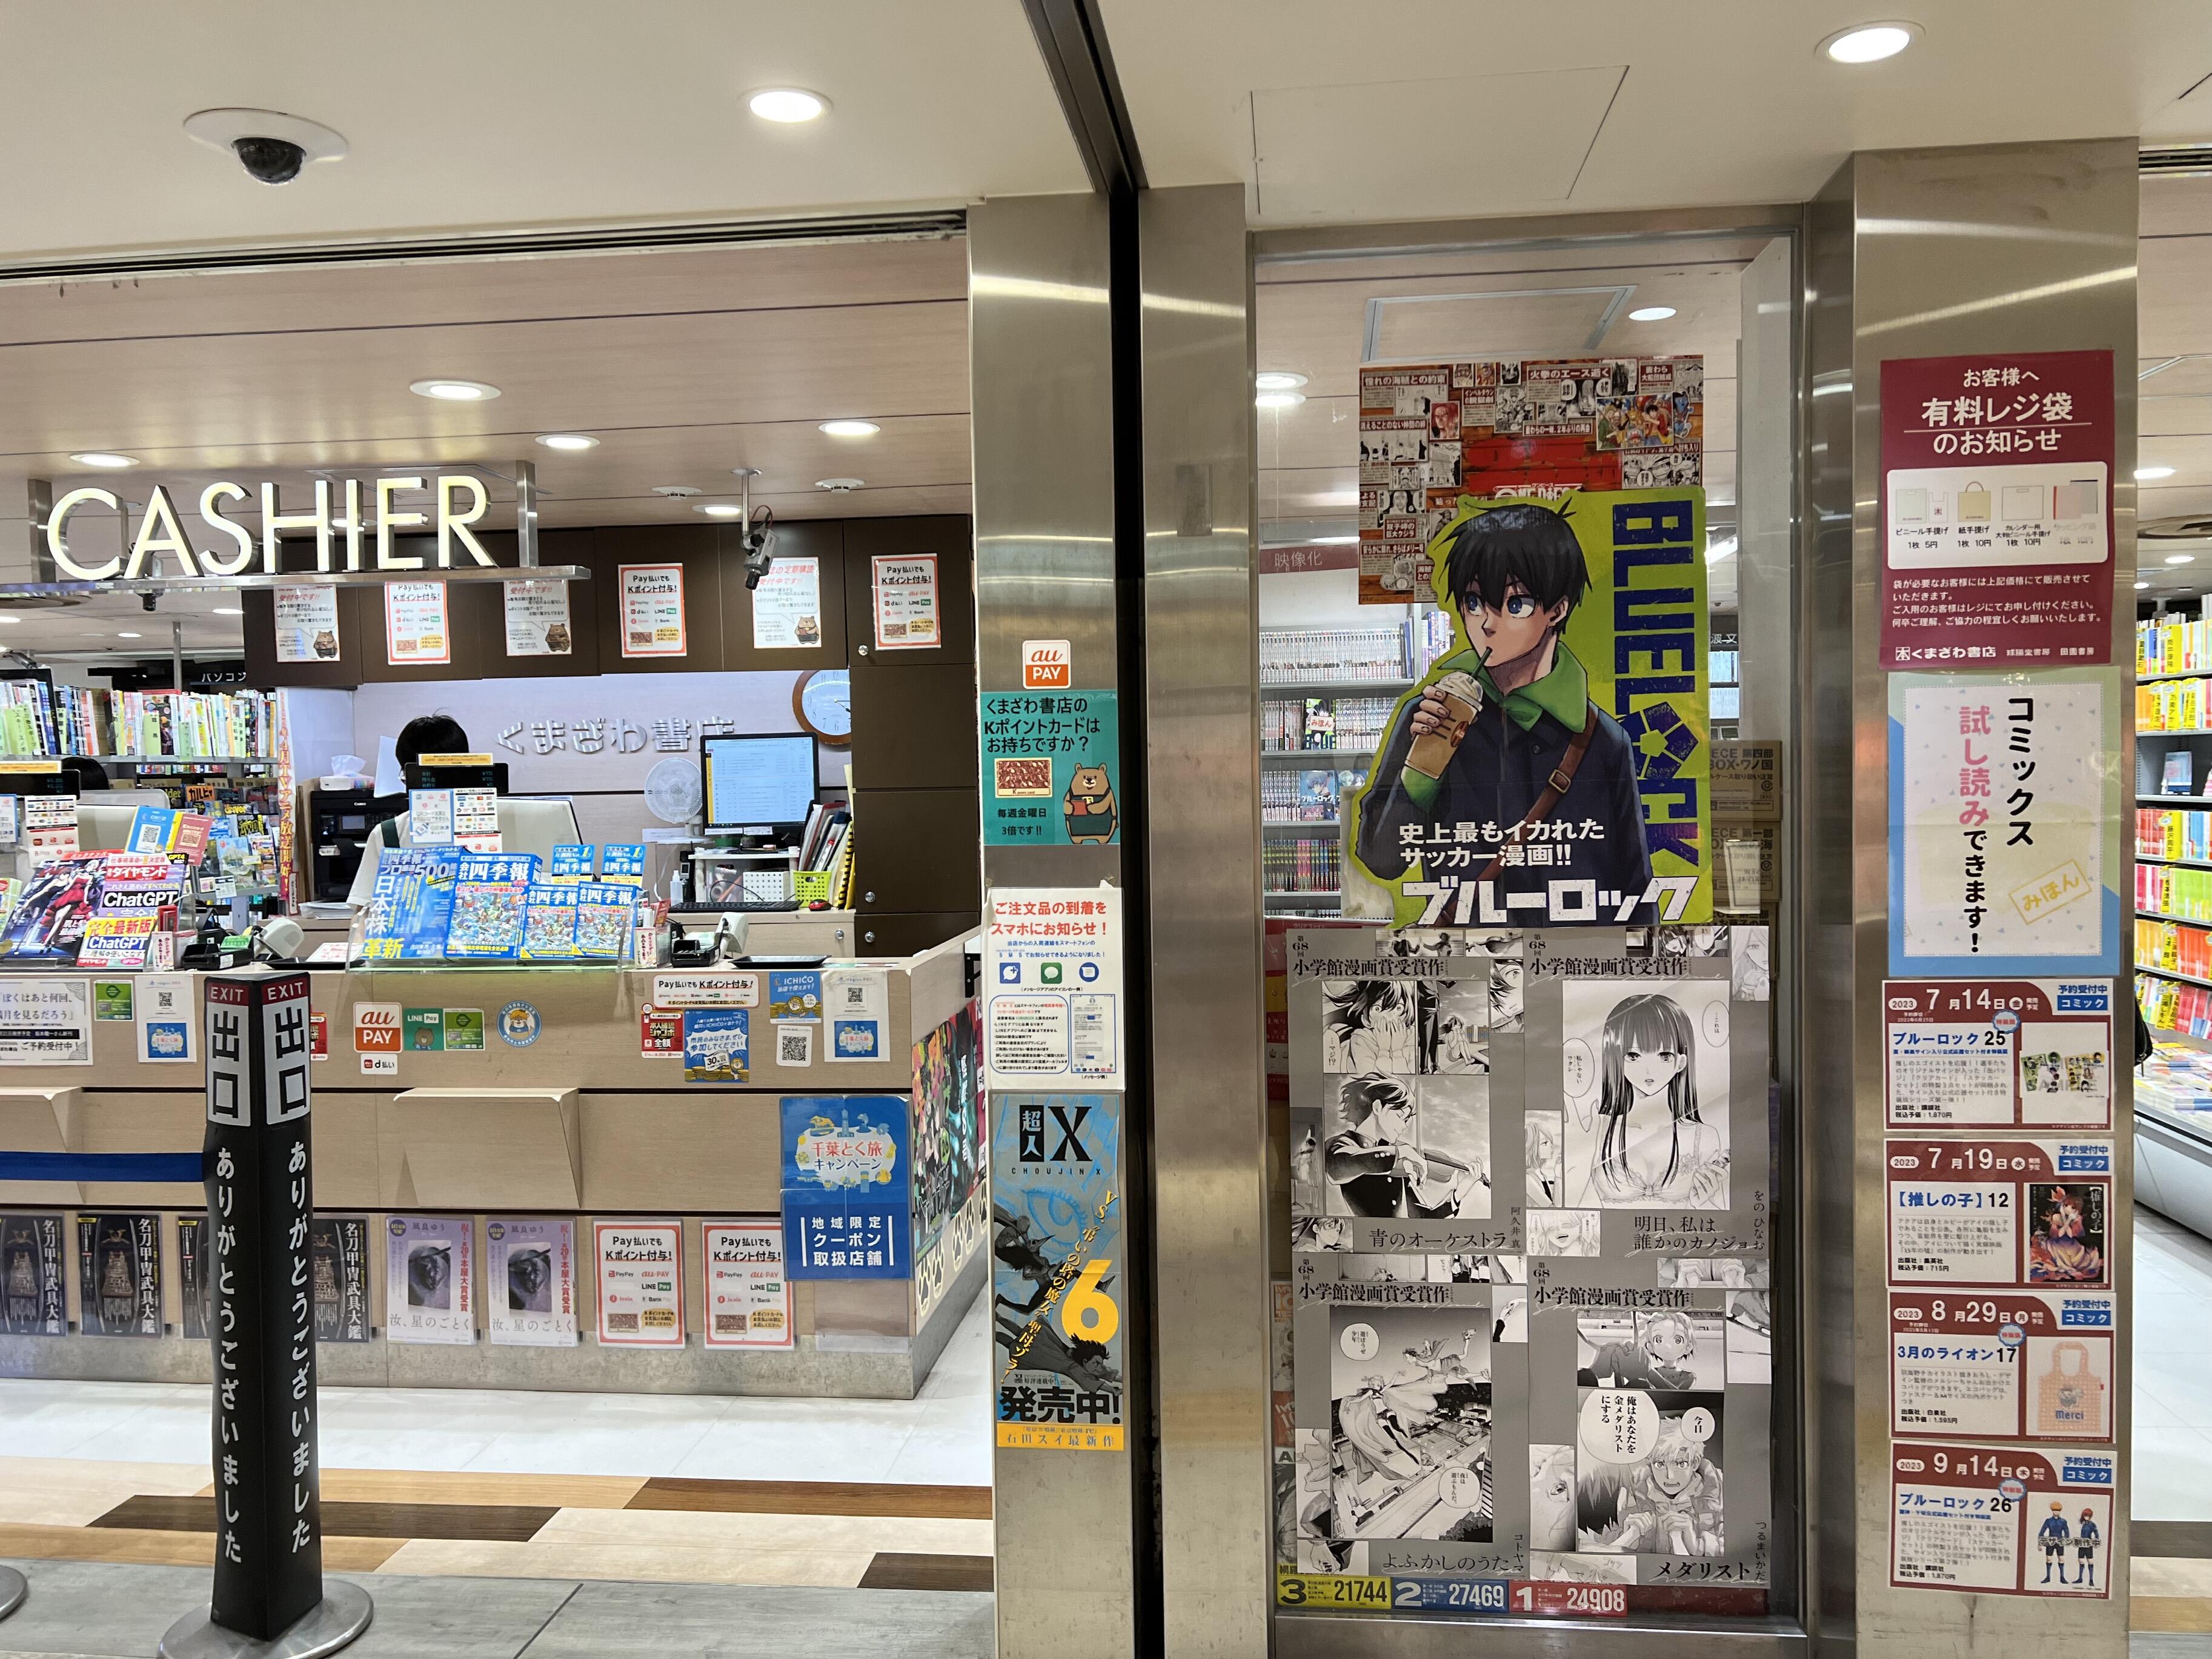 くまざわ書店 本八幡店 - 市川市八幡/書店 | Yahoo!マップ